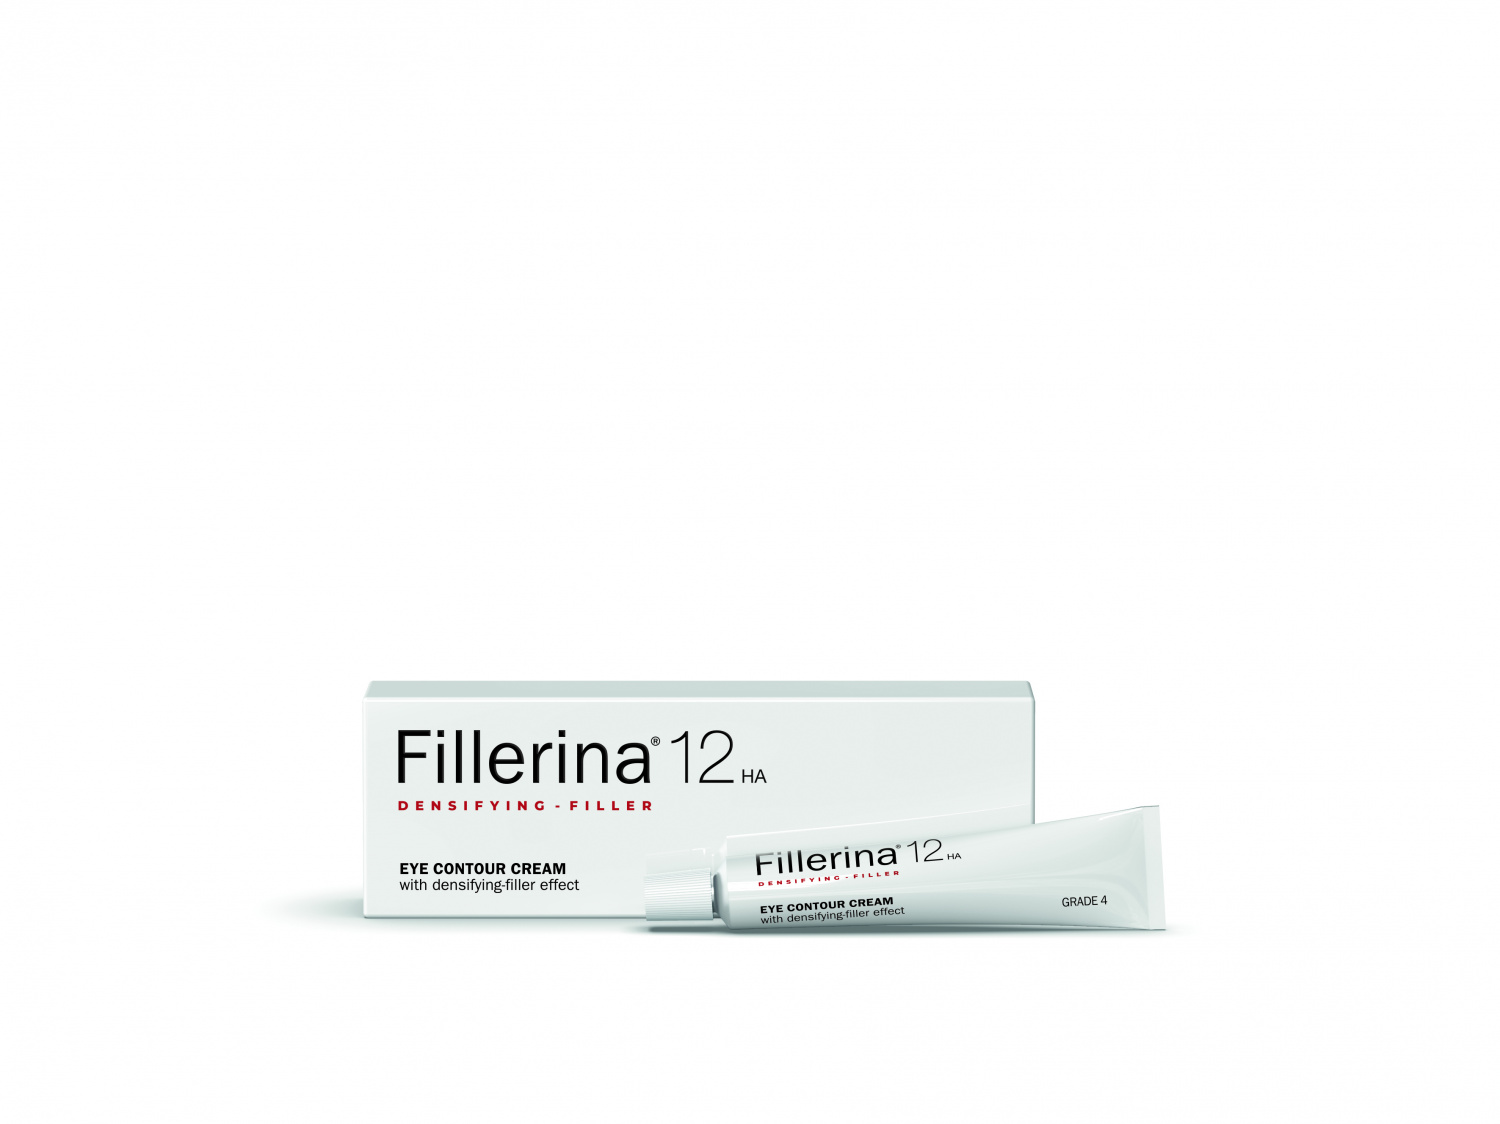 Fillerina 12HA Densifying-Filler Eye Contour Cream Grade 4 15ml - интернет-магазин профессиональной косметики Spadream, изображение 37565